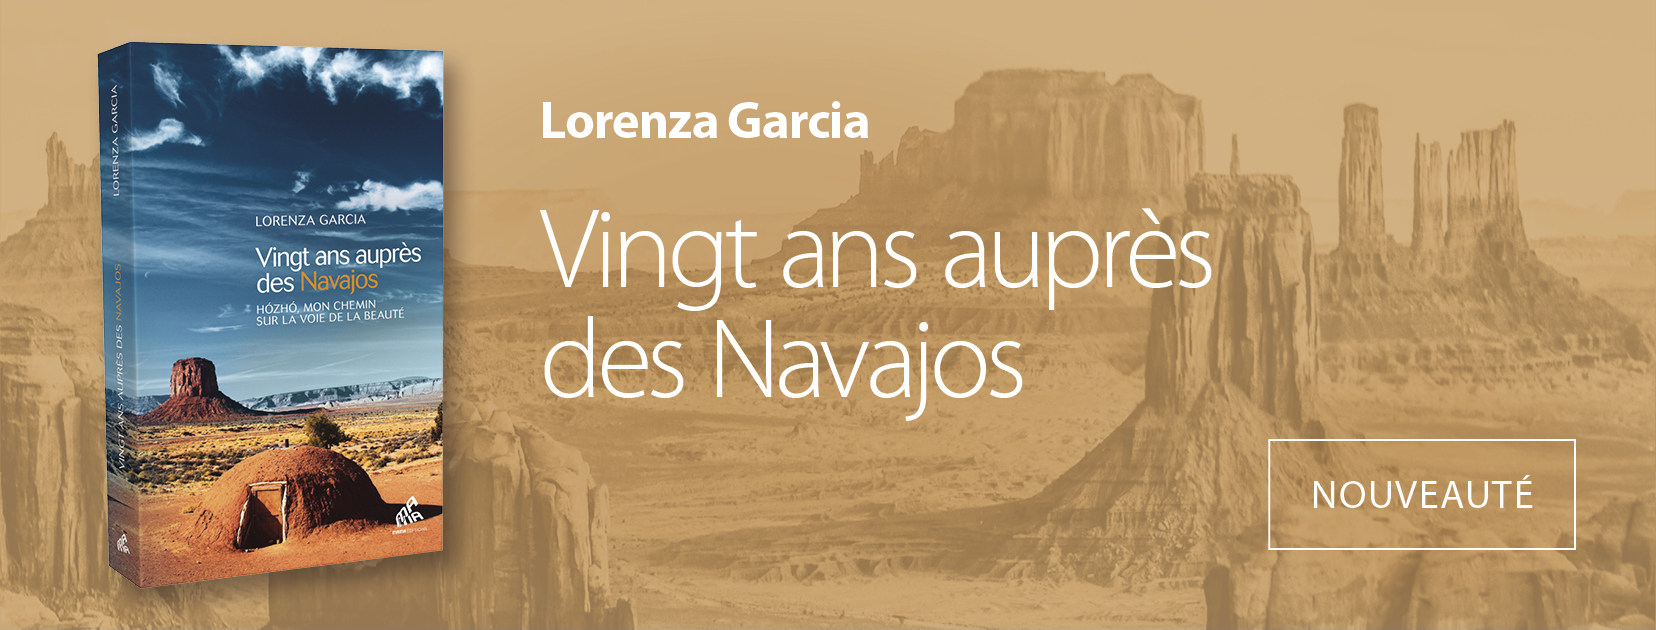 Vingt ans auprès des Navajos - Livre de Lorenza Garcia